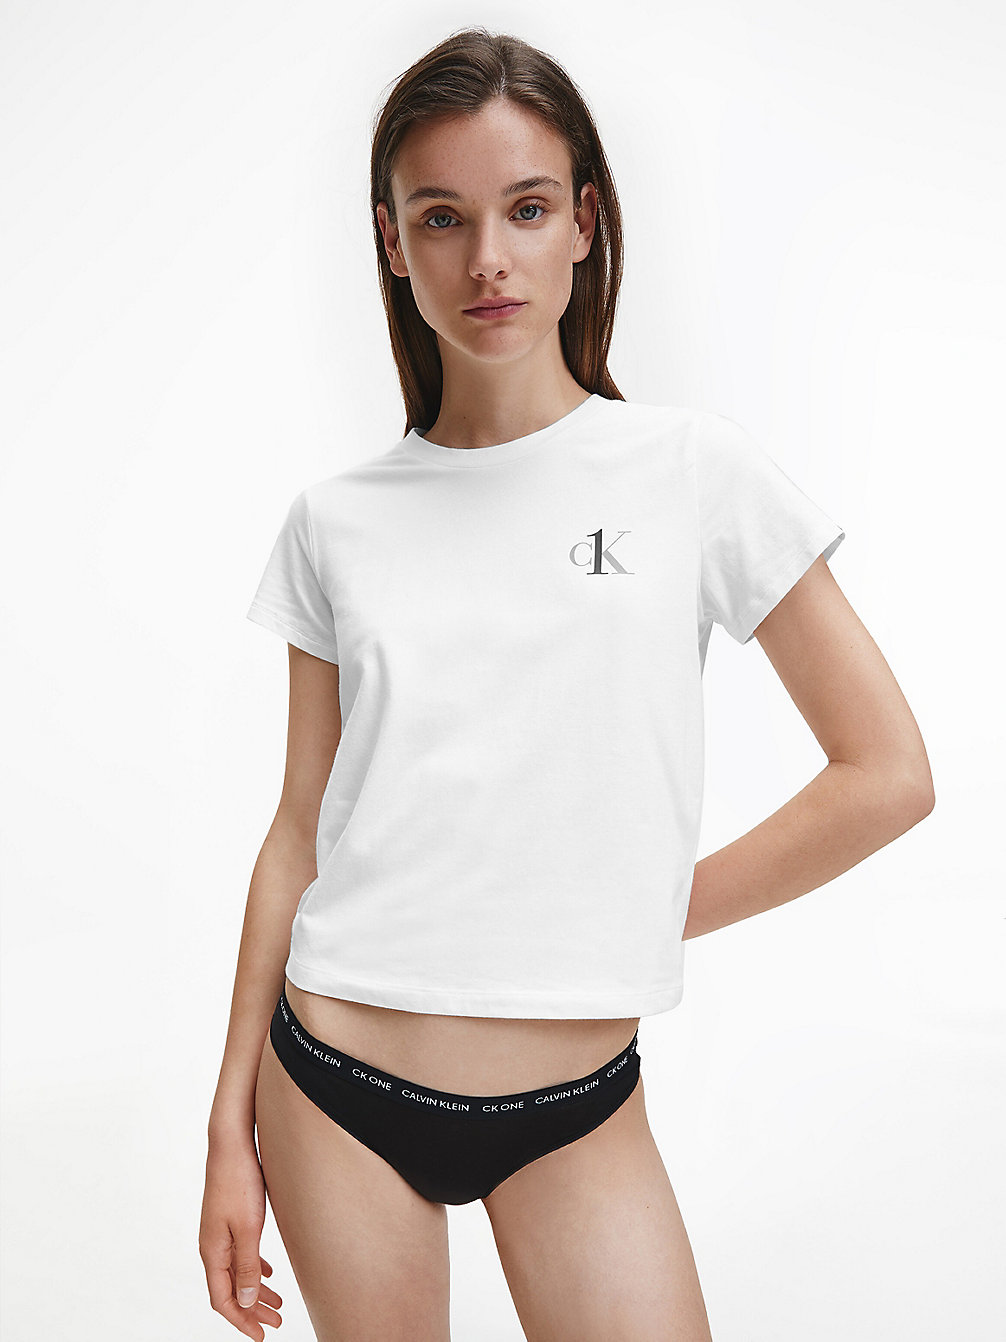 WHITE > Домашняя футболка - CK One > undefined Женщины - Calvin Klein